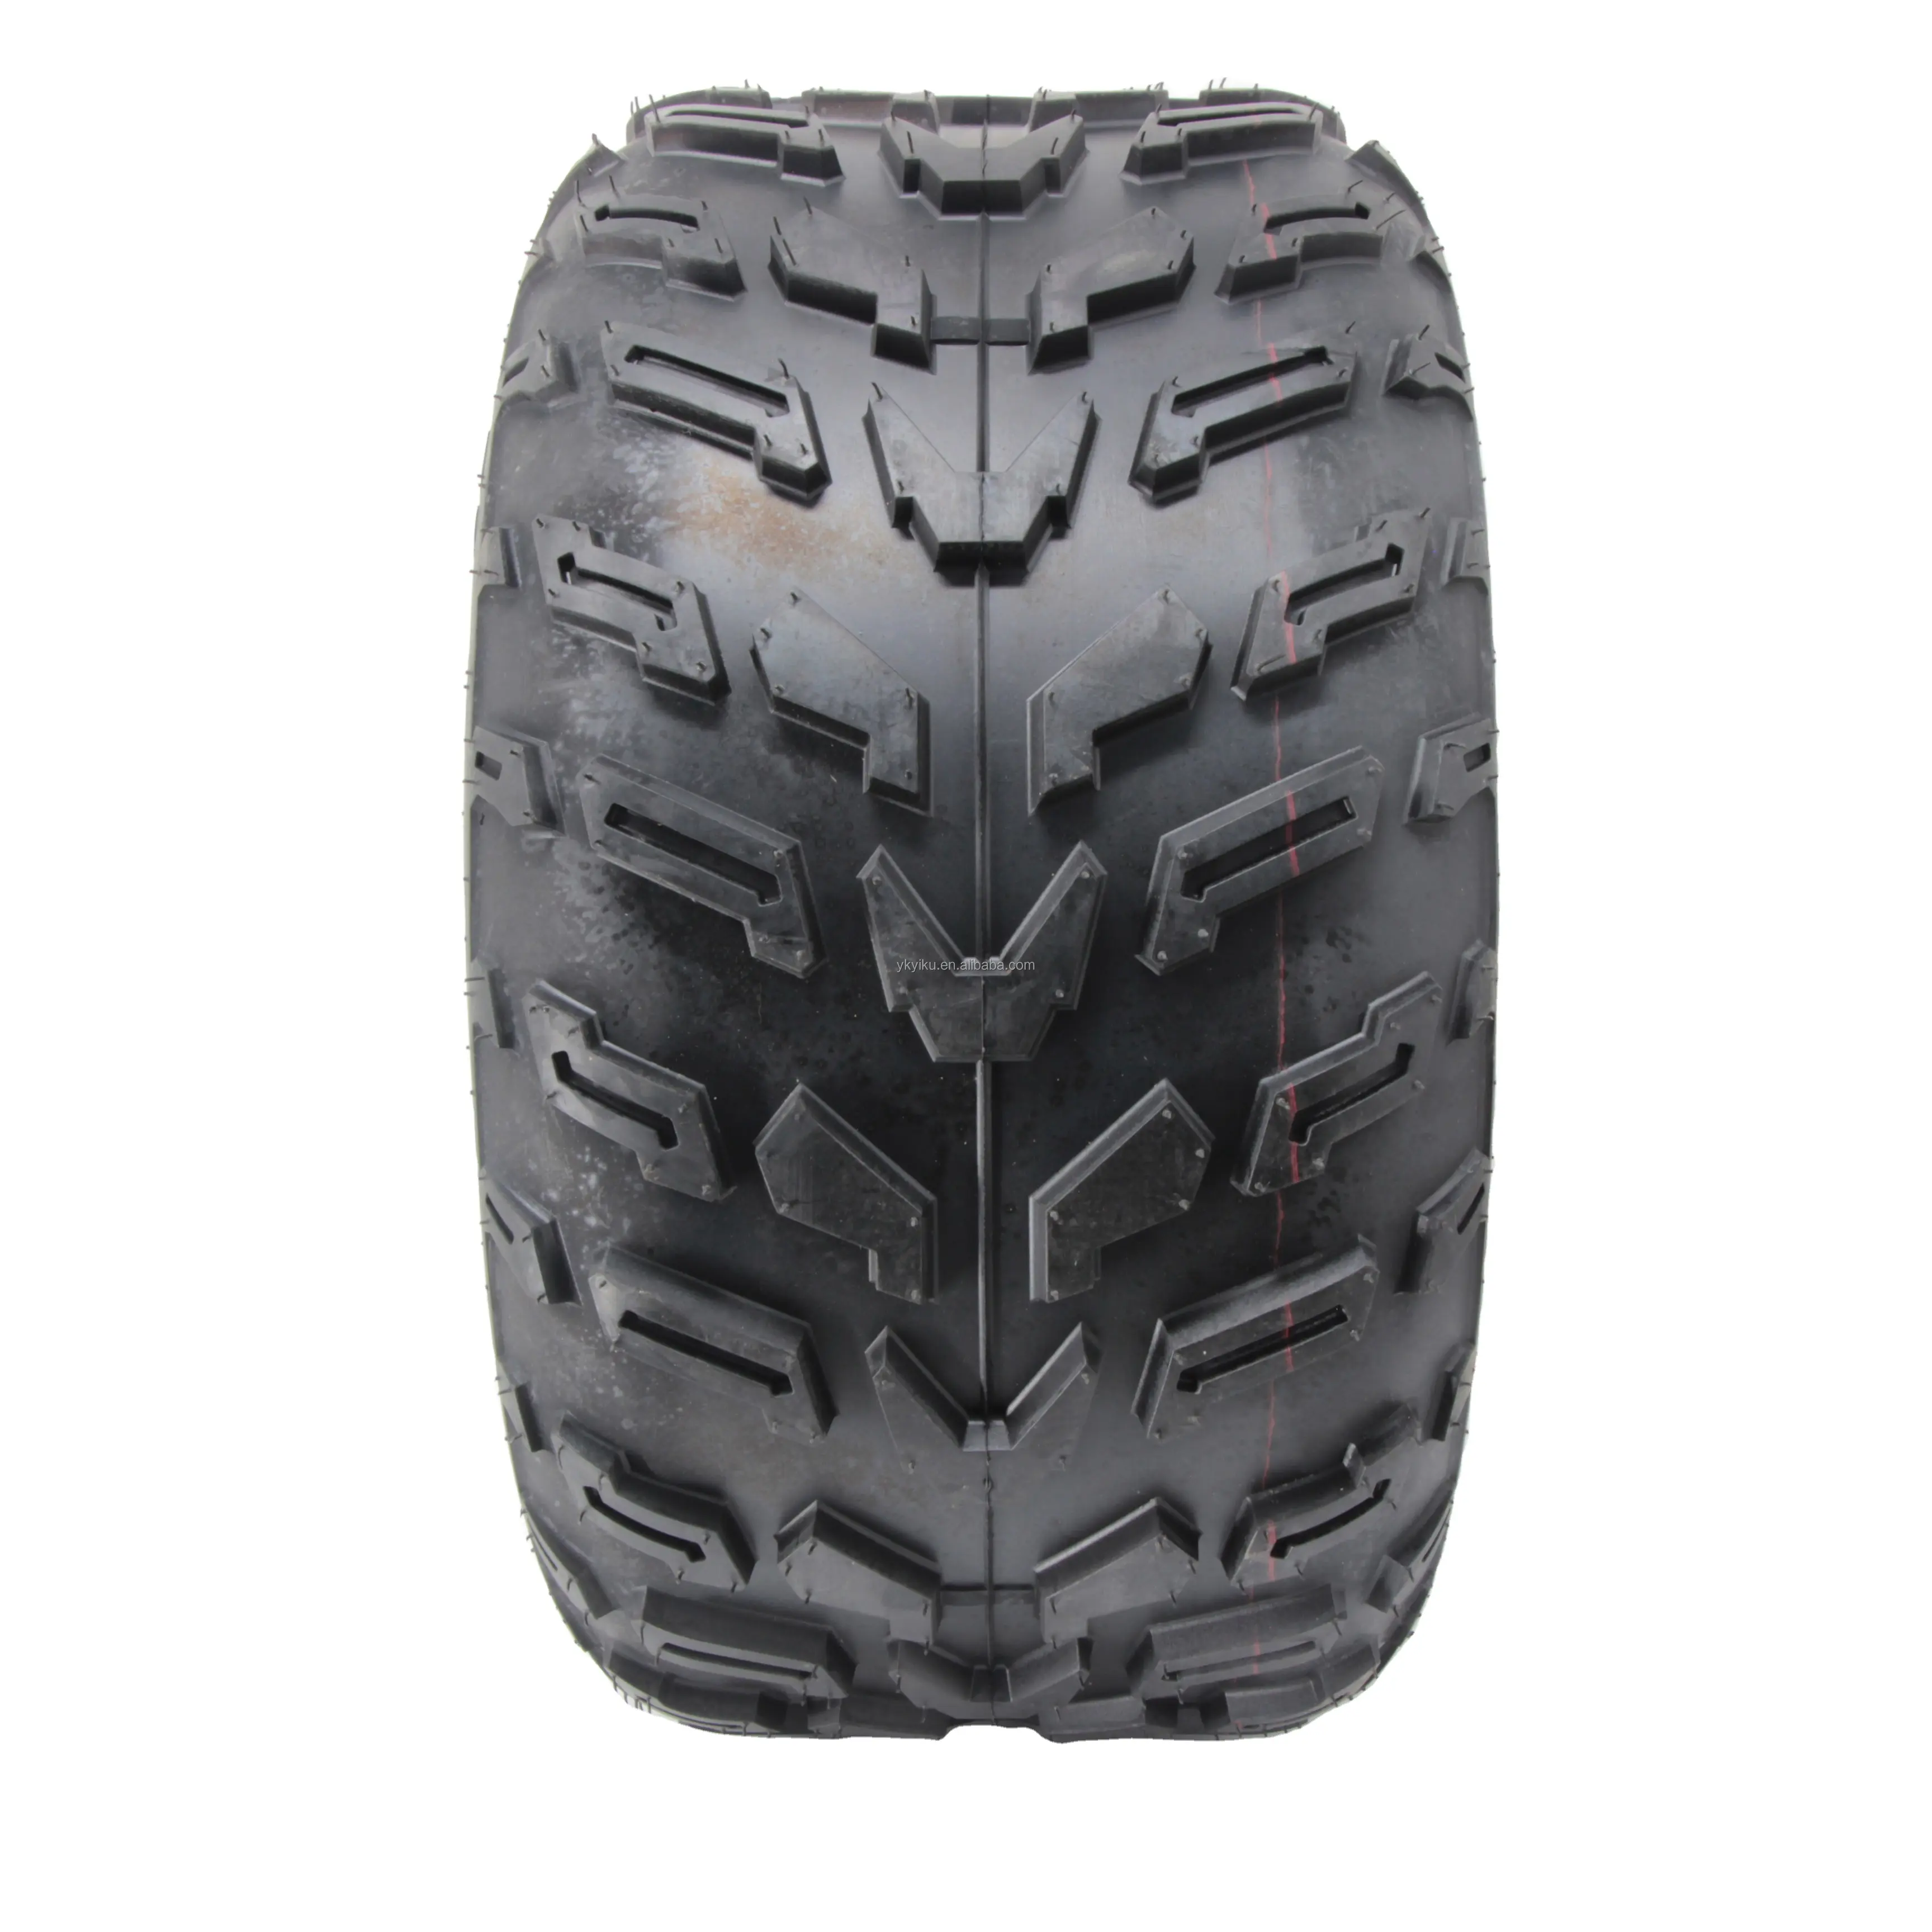 핫 세일 스포츠 용 ATV 타이어 22x10-10 23x7-10 4pr 타이어 ATV 용 튜브리스 타이어